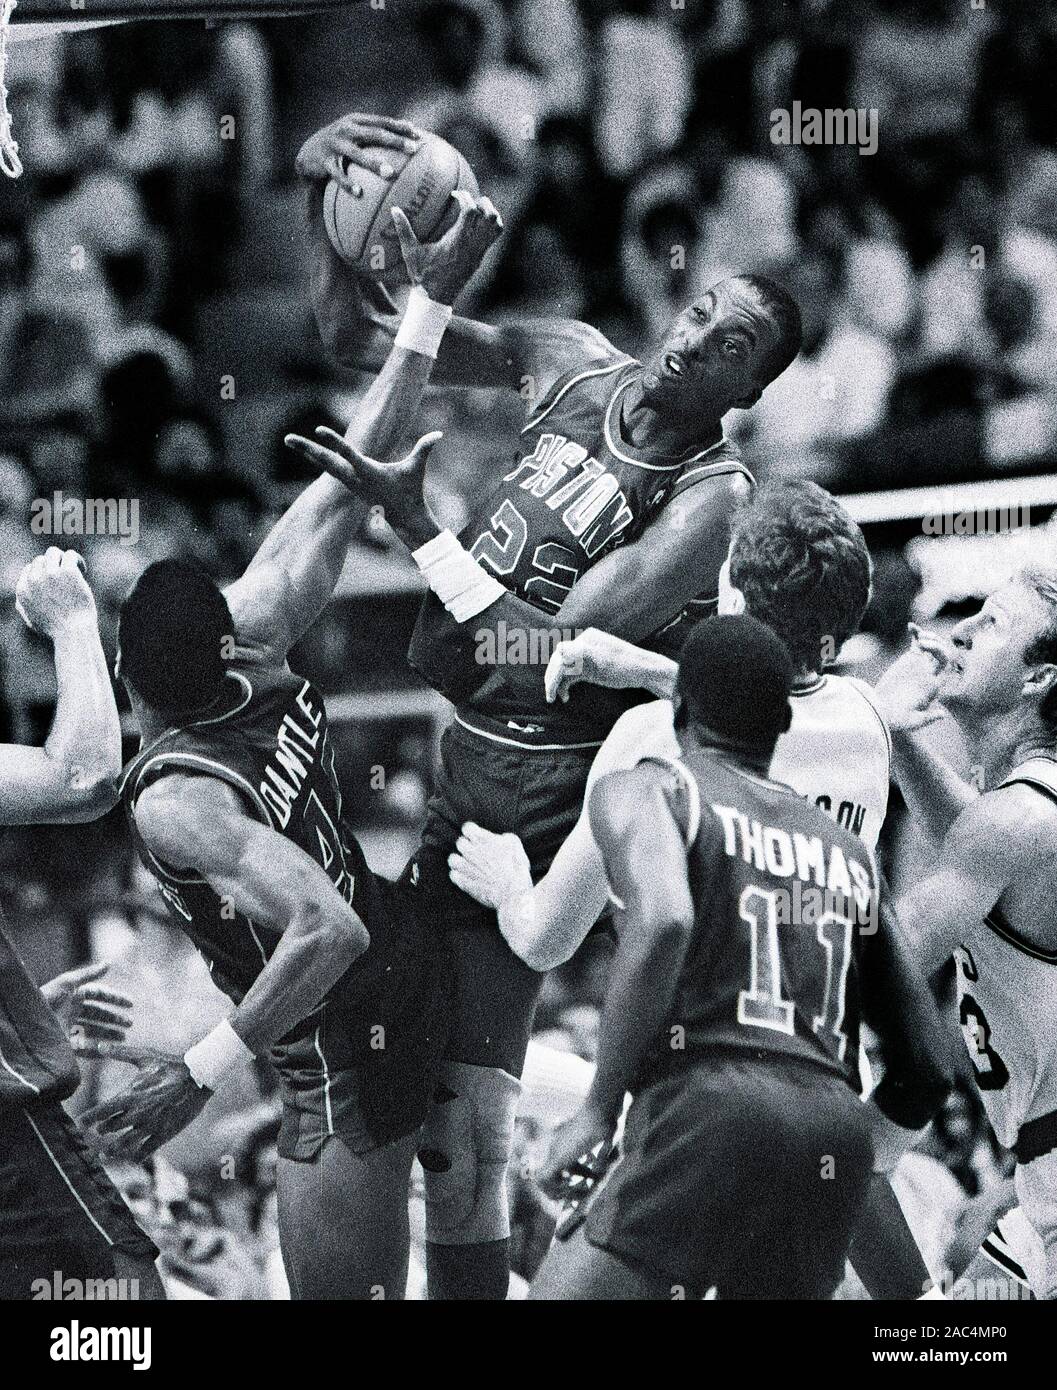 Detroit Pistons John Salley und Adrian Dantley der Rückstoß beim Basketball Spiel gegen die Boston Celtics im Boston Garden in Boston, MA USA 1988 Foto Grab von Bill belknap Stockfoto